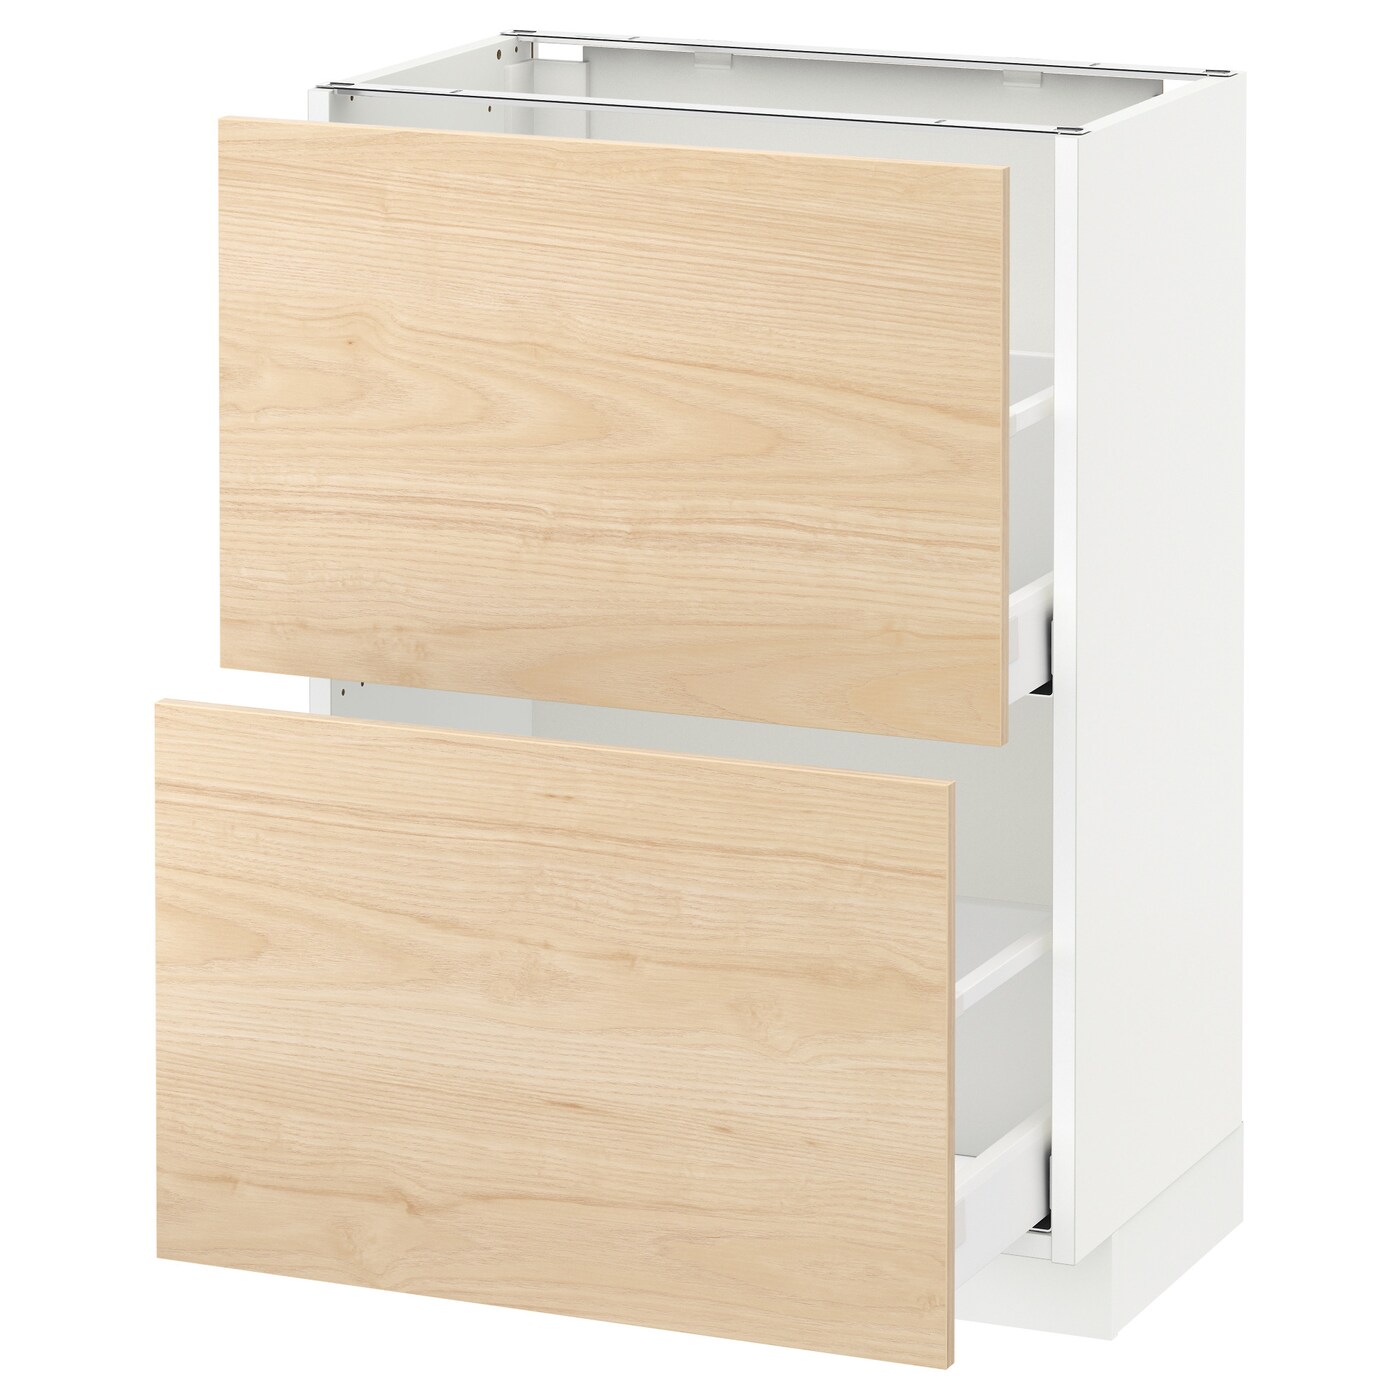 Напольный кухонный шкаф  - IKEA METOD, 88x39x60см, белый/светлый ясень, МЕТОД ИКЕА